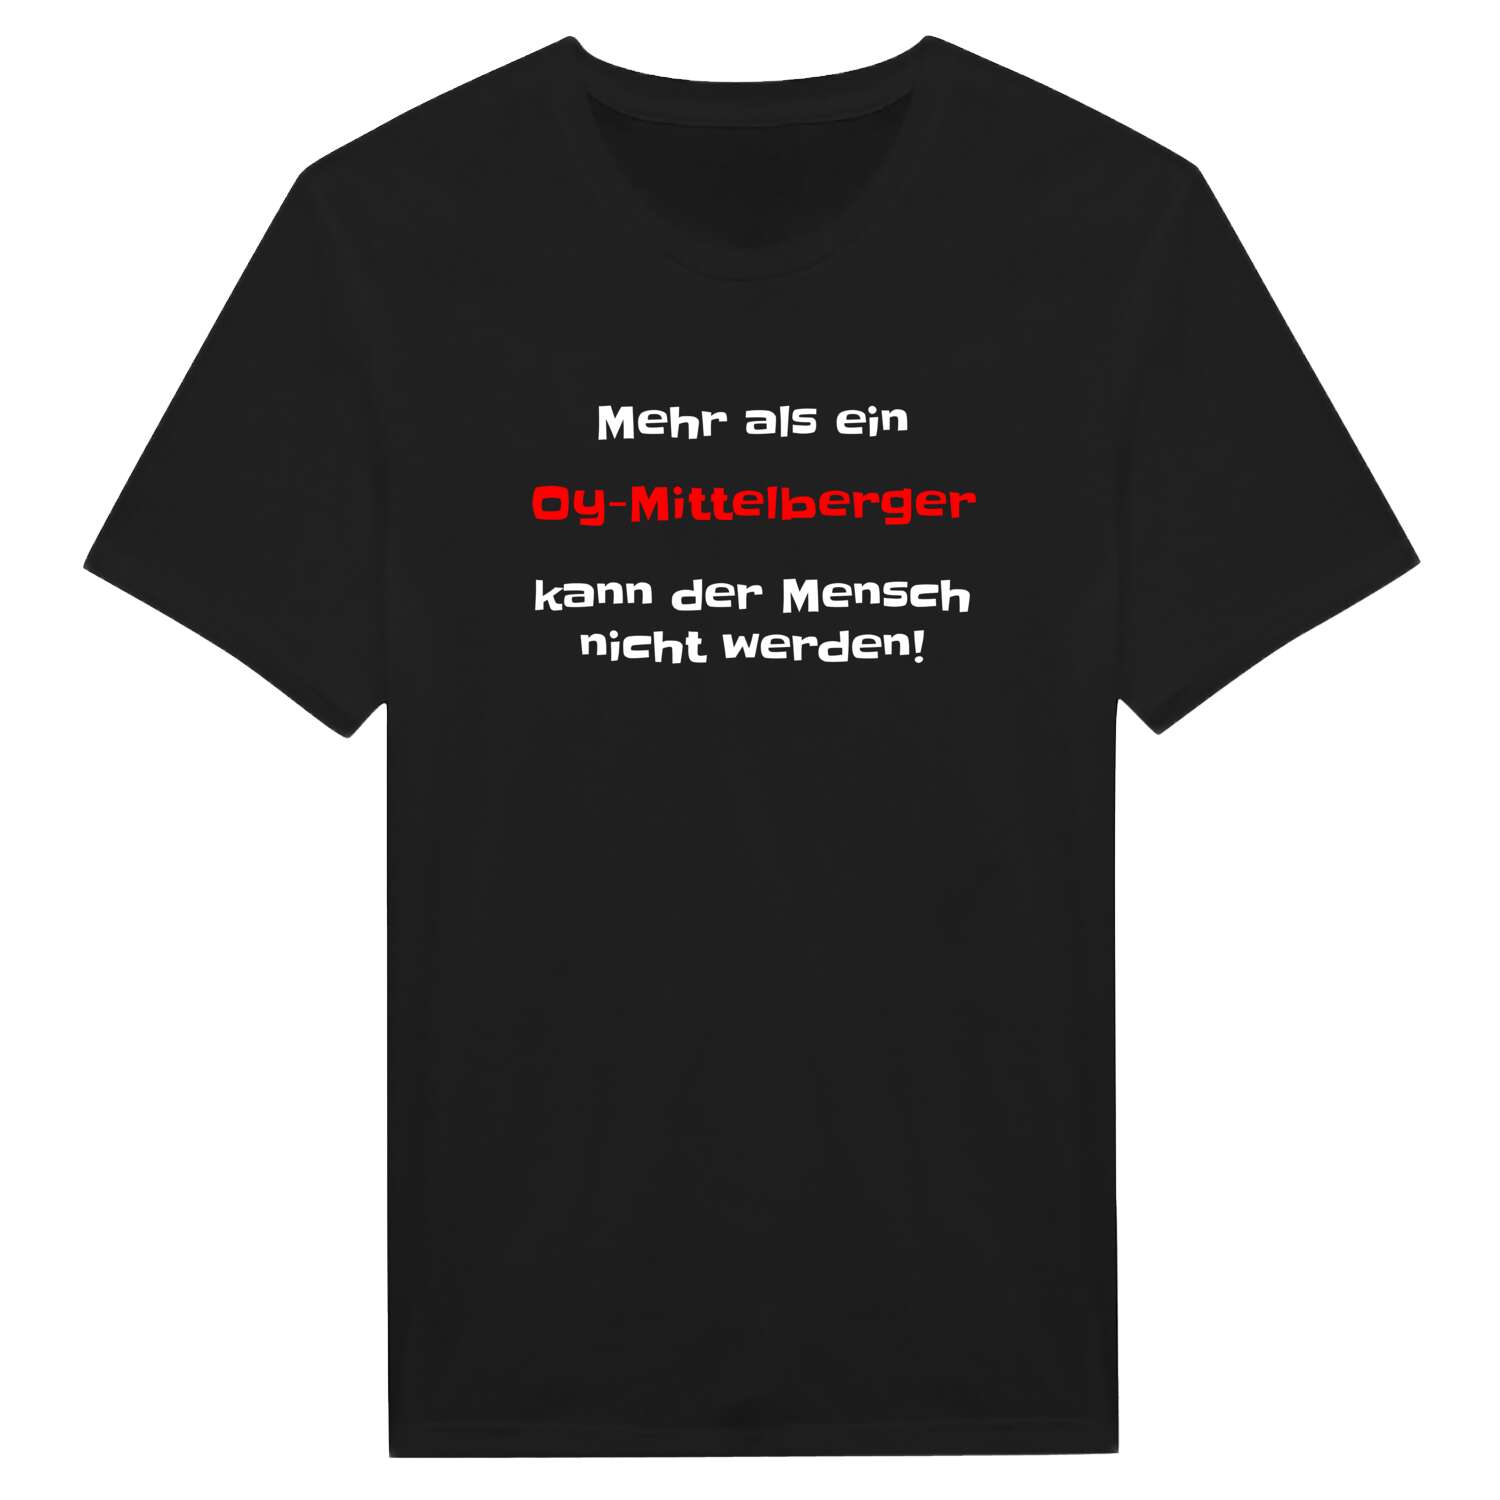 Oy-Mittelberg T-Shirt »Mehr als ein«